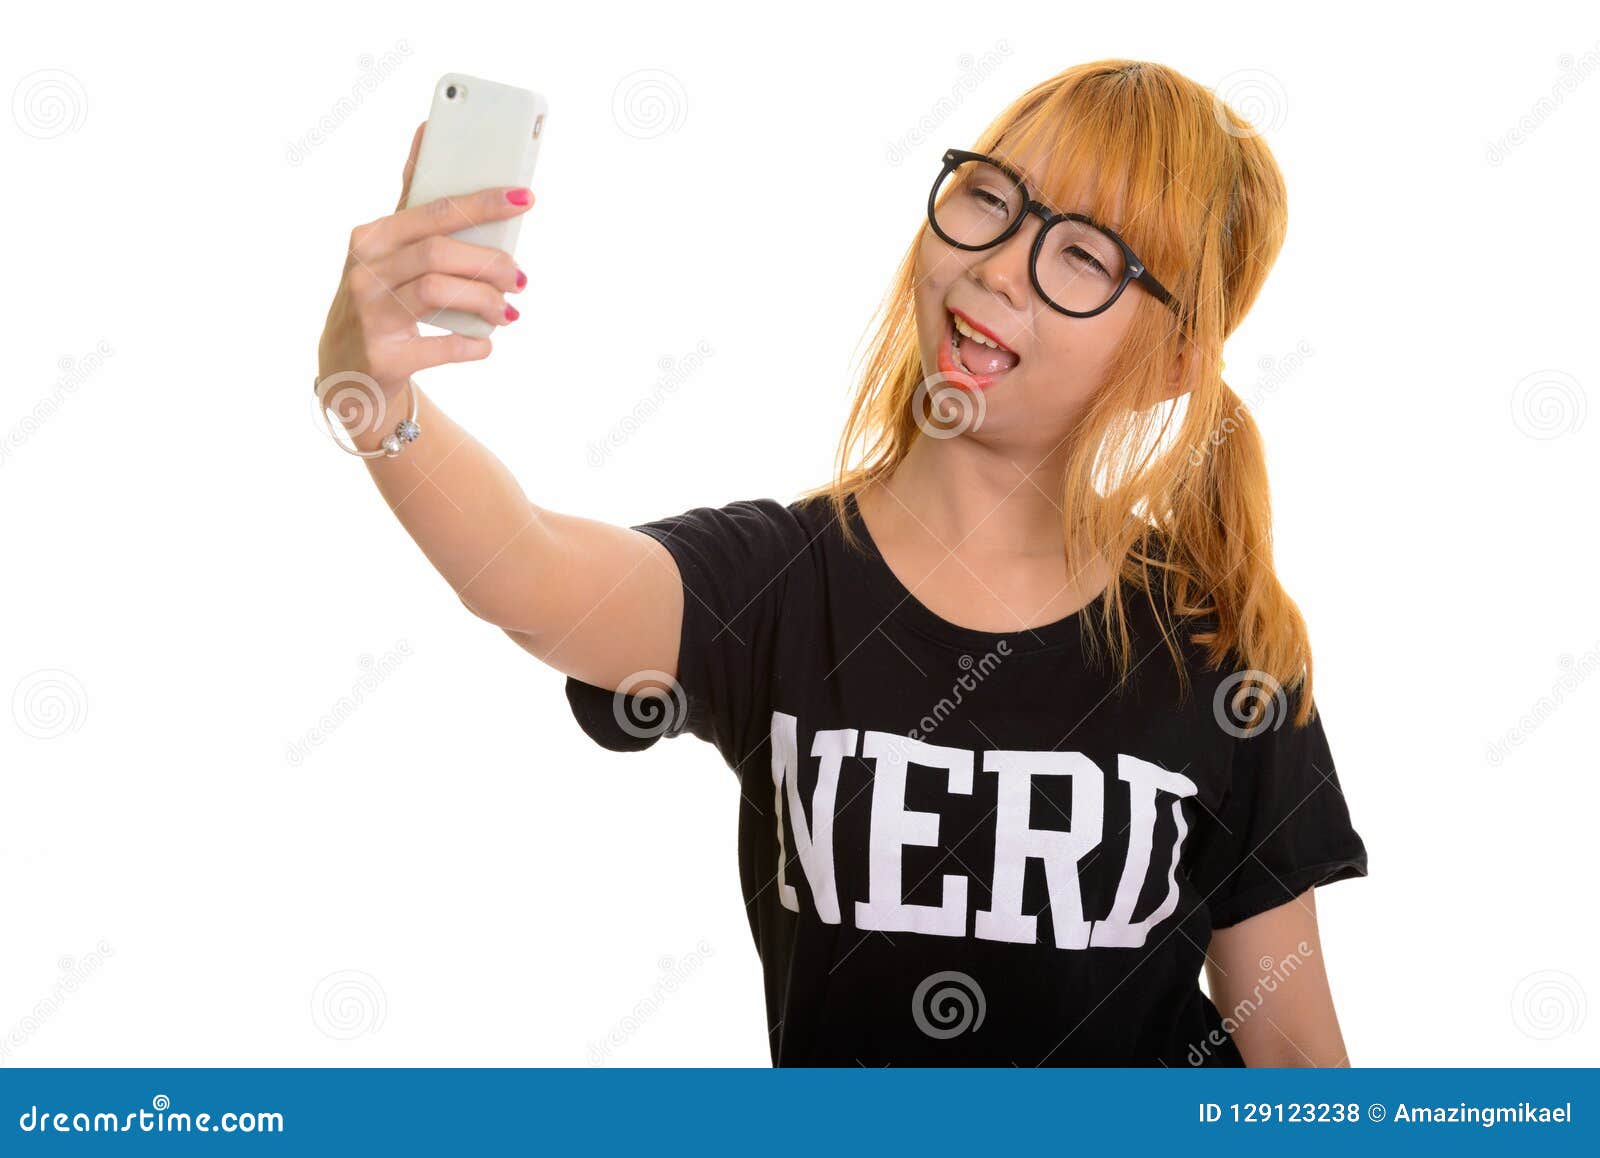 nerd teen girl selfie